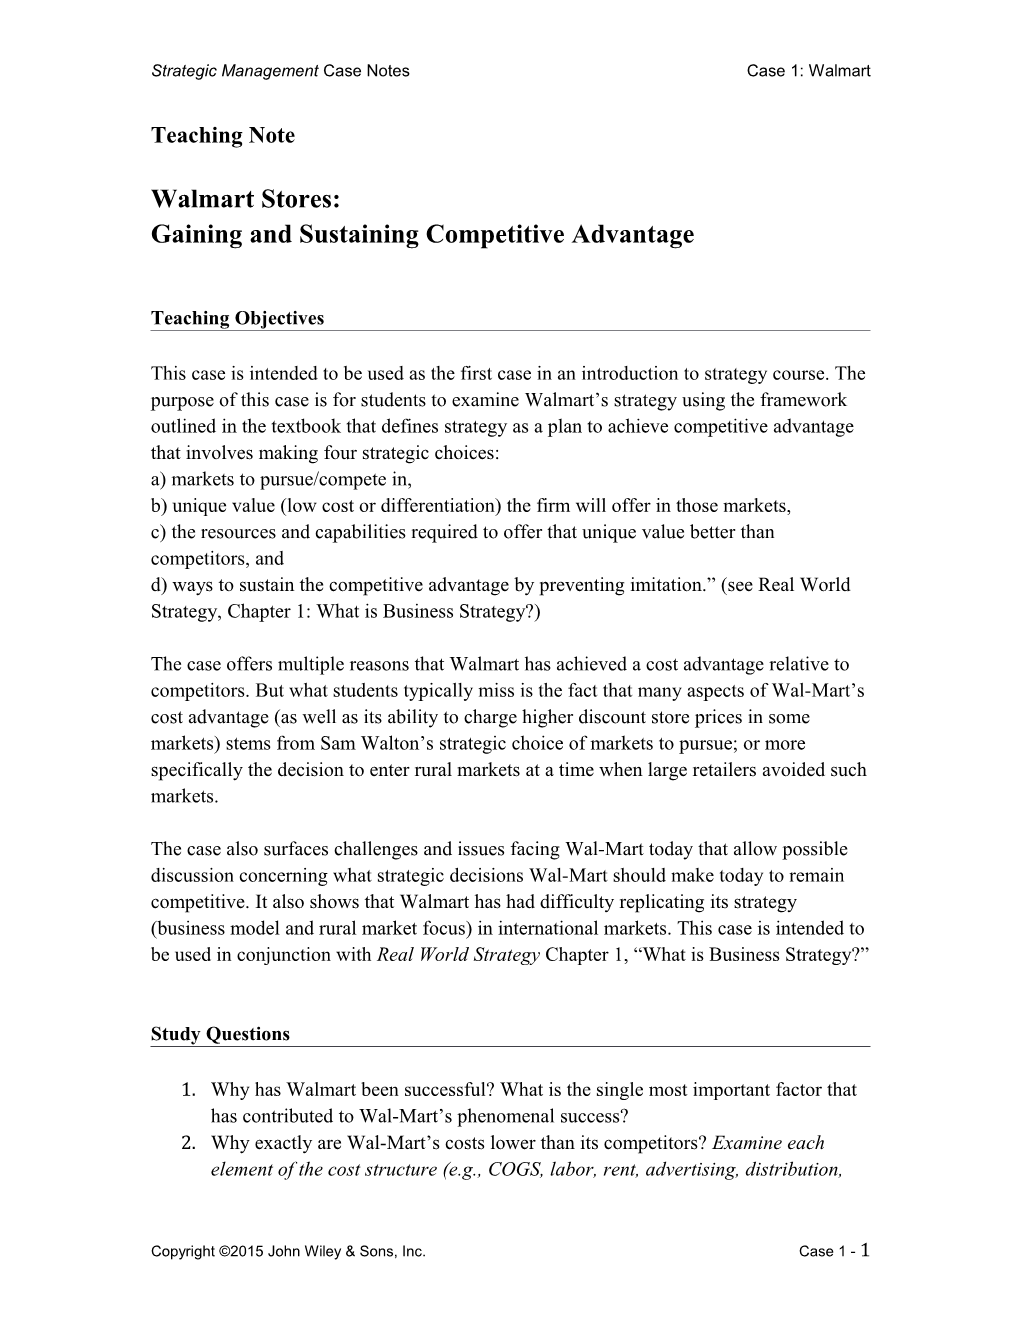 Strategic Management Case Notescase 1: Walmart